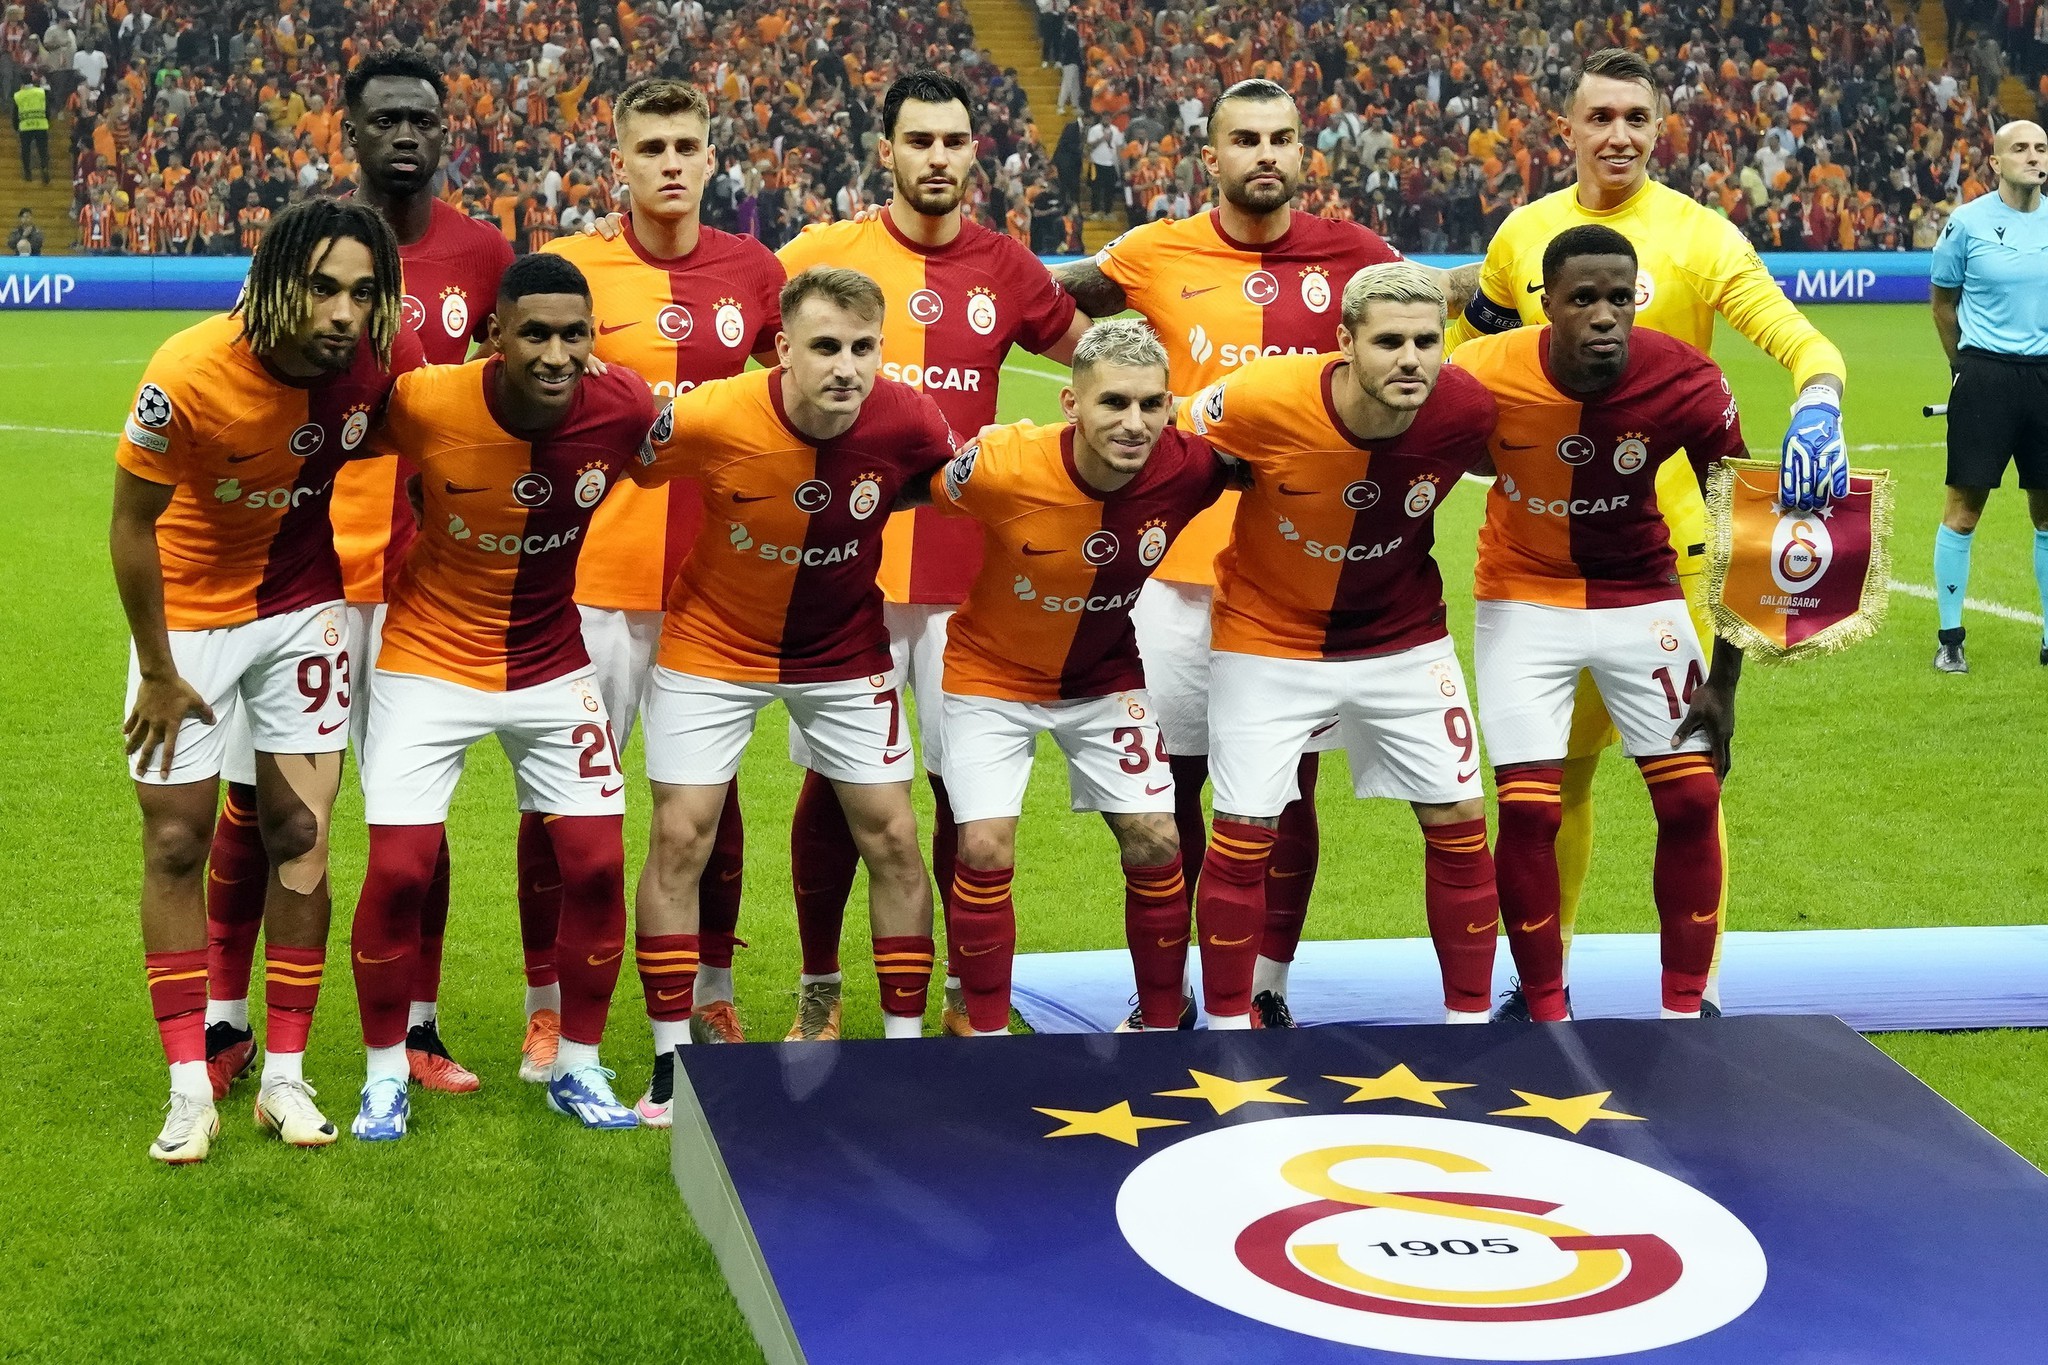 Transferde Galatasaray - Fenerbahçe derbisi! Böyle kapışma görülmedi